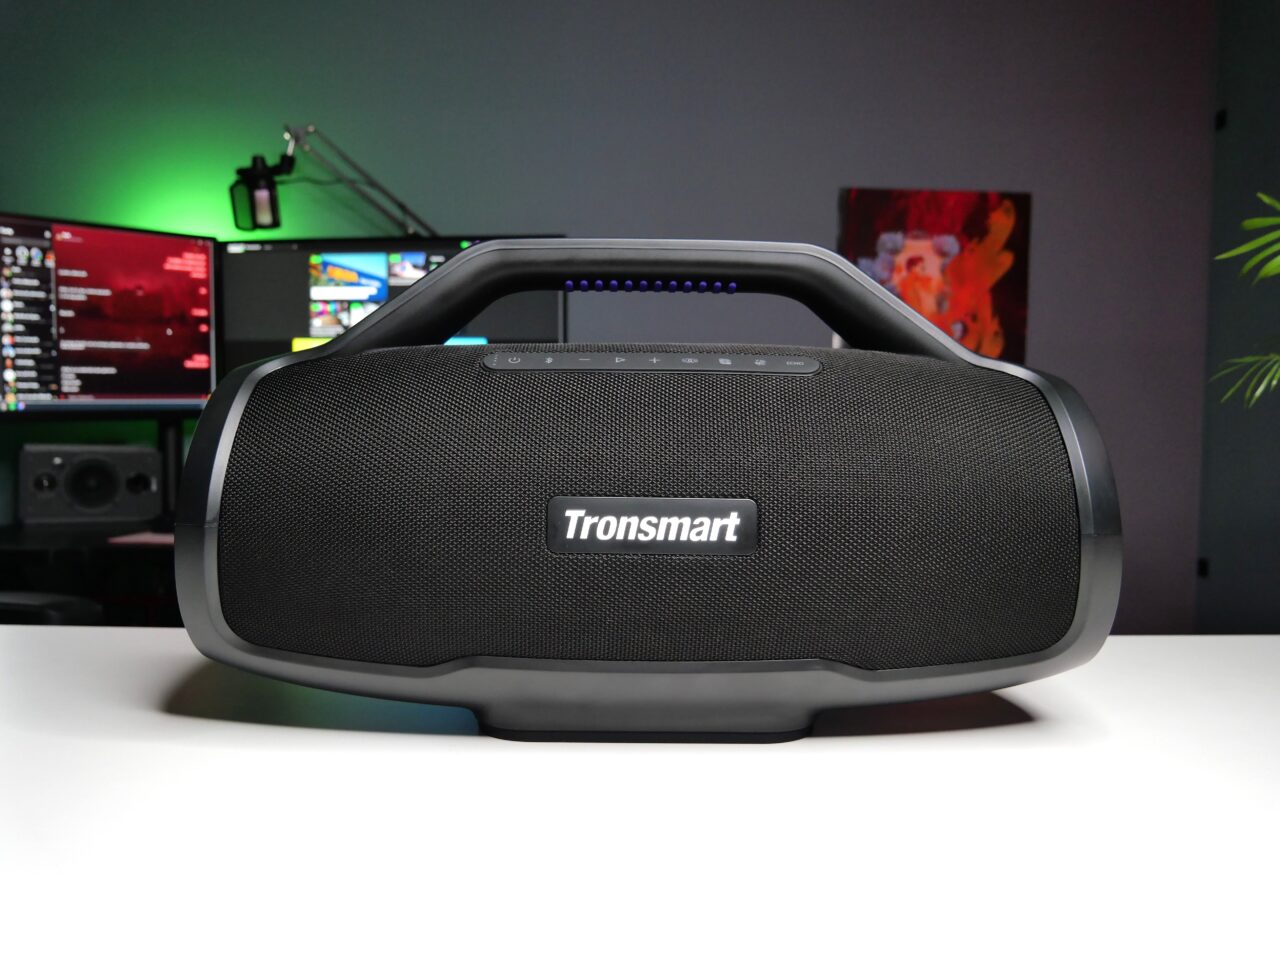 Czarny, przenośny głośnik Bluetooth marki Tronsmart na biurku, w tle komputer z włączonymi monitorami i kolorowe oświetlenie RGB.